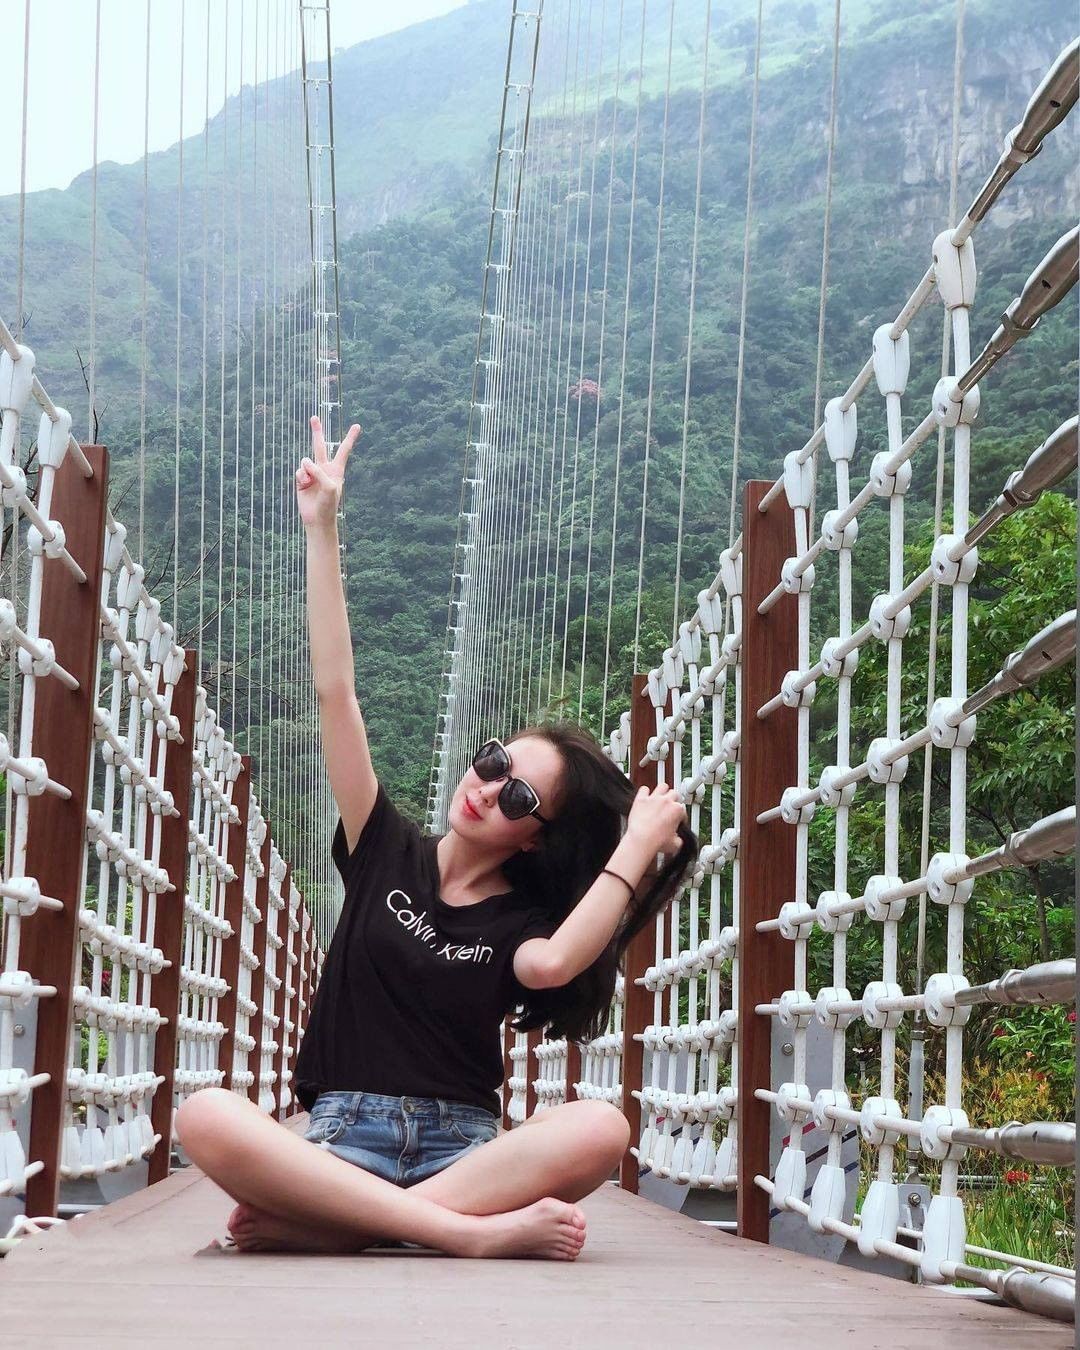 阿里山的達娜伊谷吊橋非常適合來放鬆！養精蓄銳，再繼續努力-⠀⠀⠀⠀⠀⠀⠀⠀⠀⠀⠀感謝 @ebyayaebebya  分享的美照-⠀...